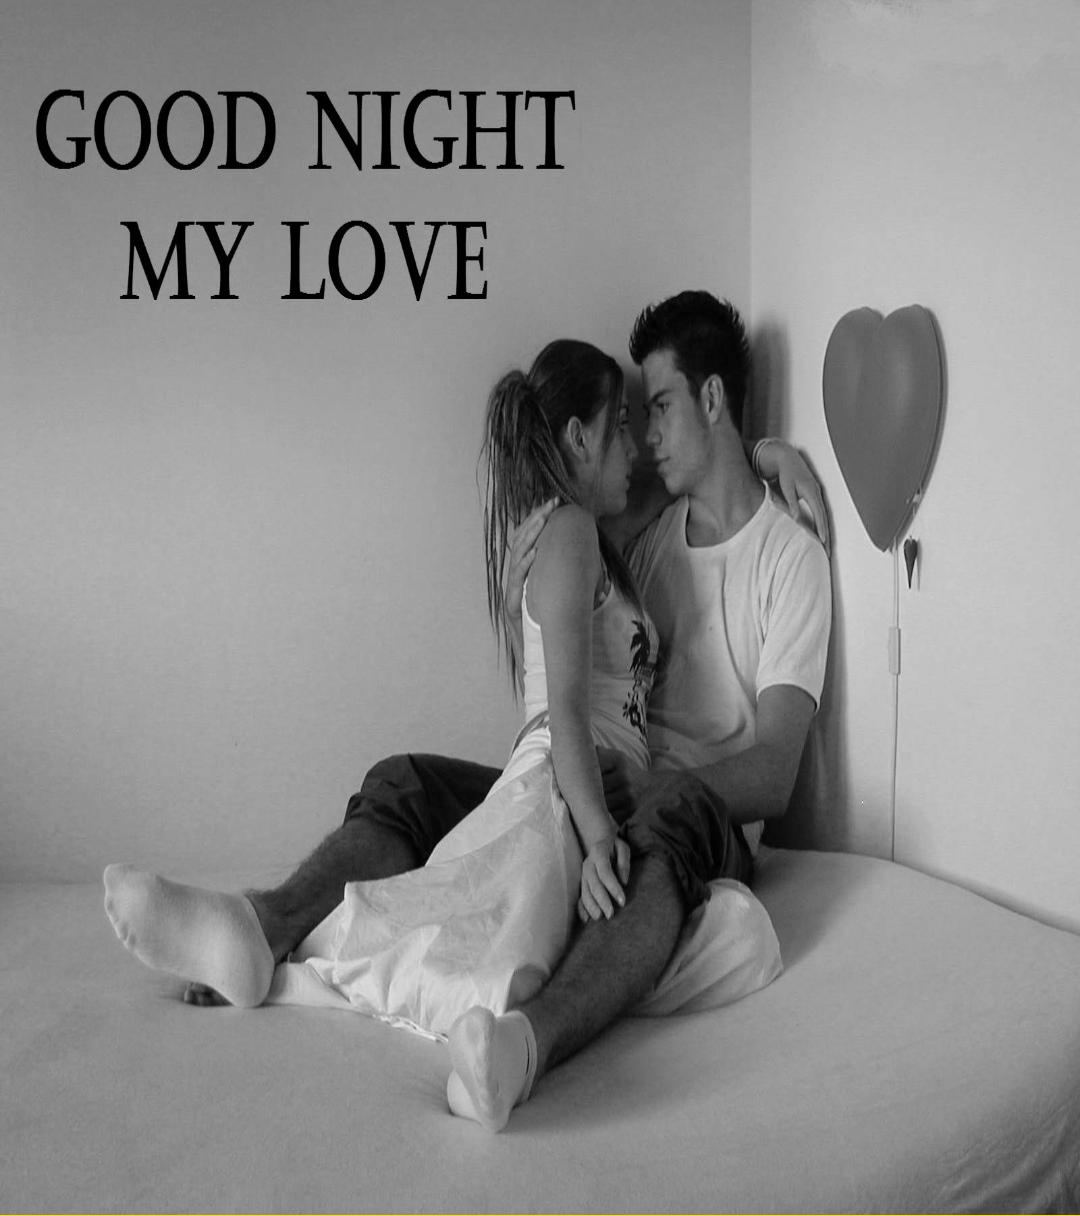 Good Night my Love картинки мужчине